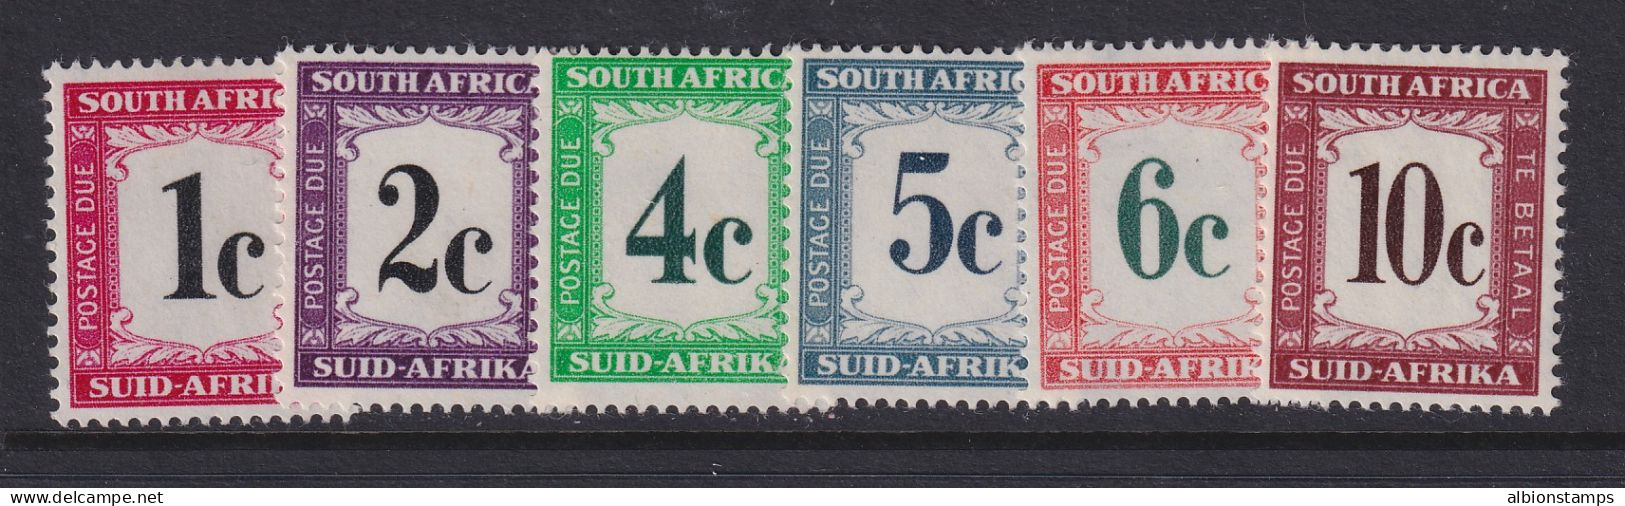 South Africa, Scott J46-J51 (SG D45-D50), MNH - Strafport